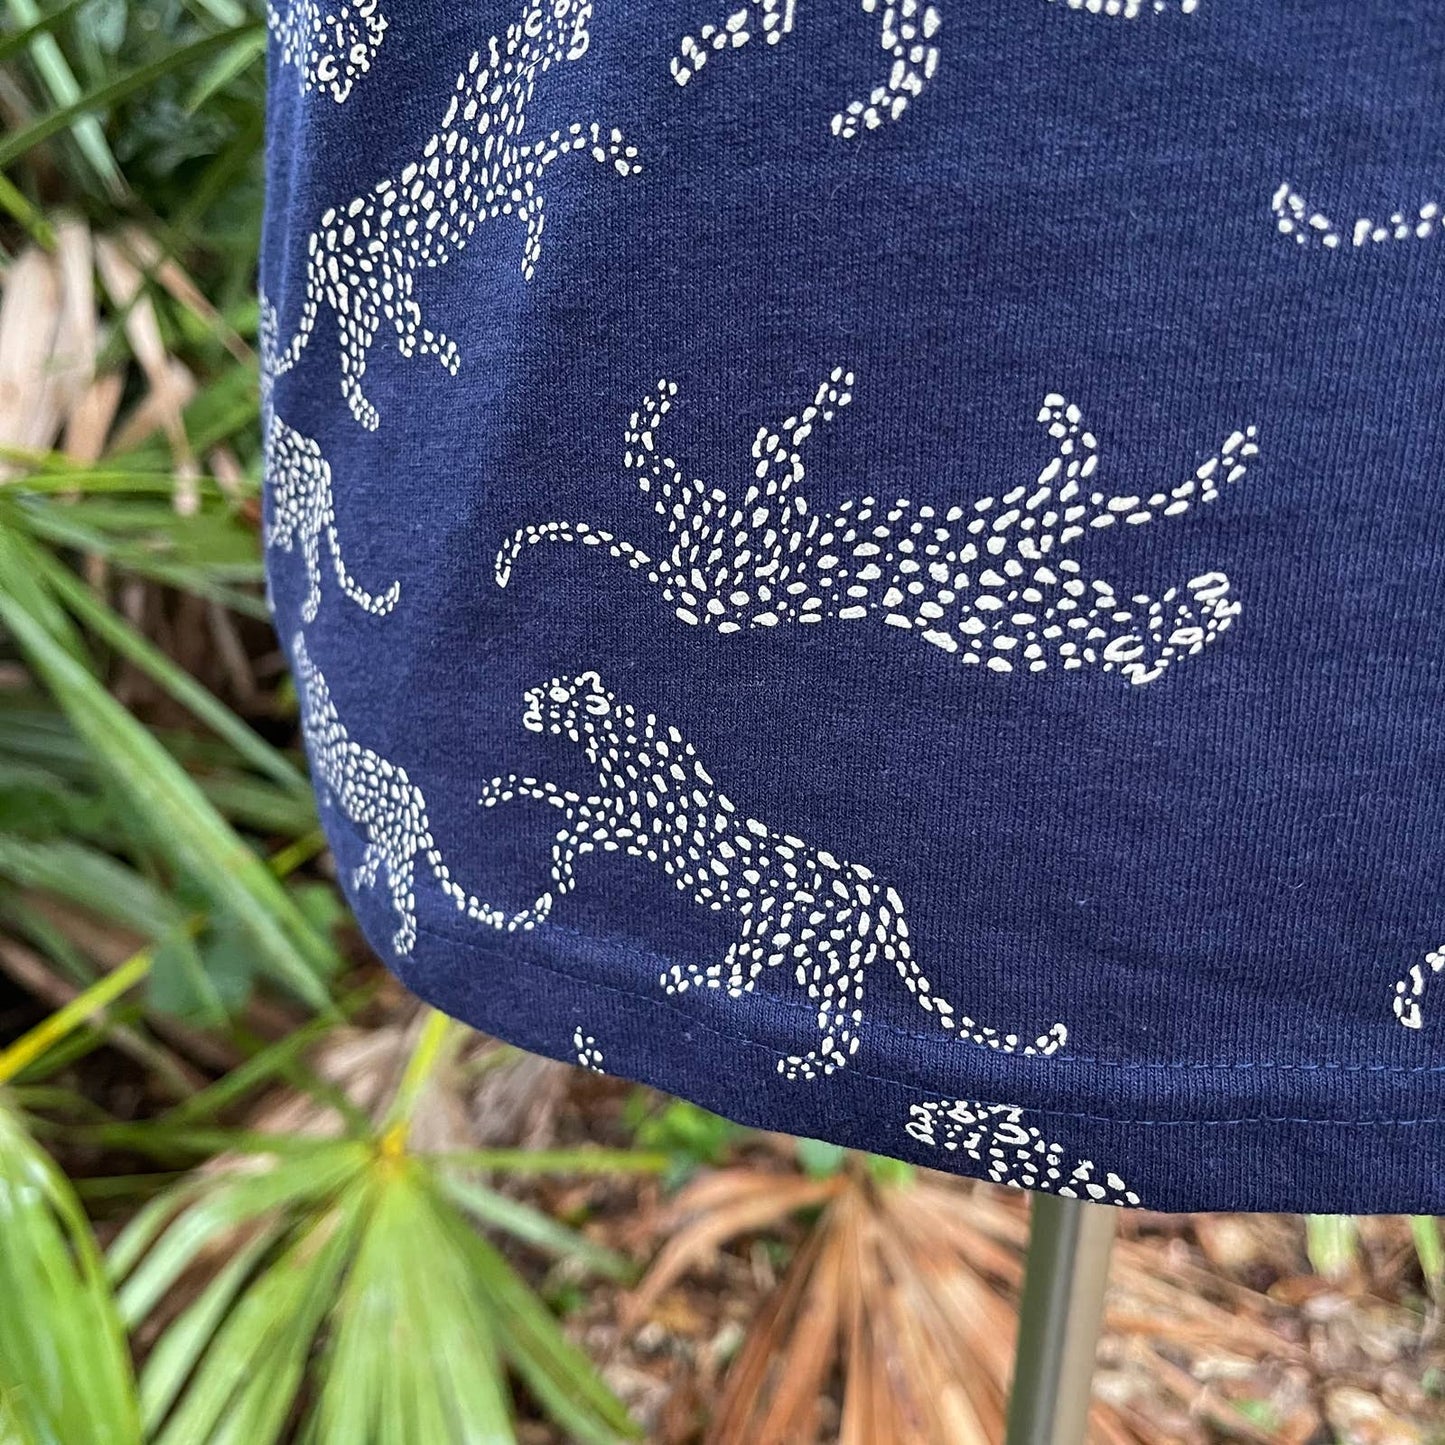 Vintage 90s Blue Leopard Cheetah Tee Shirt Cotton Kavio Designs Size M L